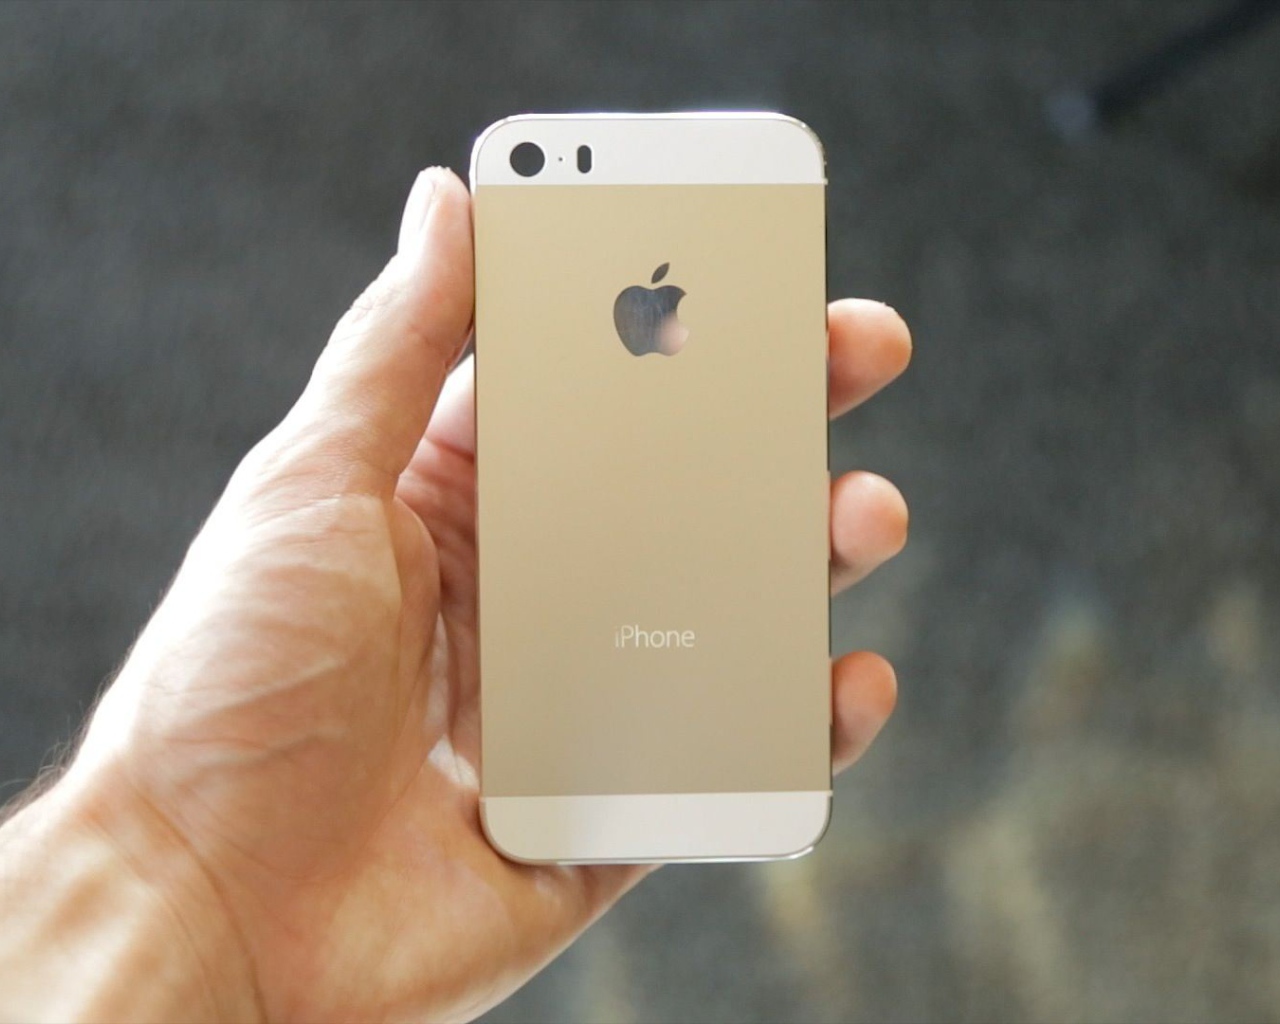 Iphone 5S цвета шампань в руке